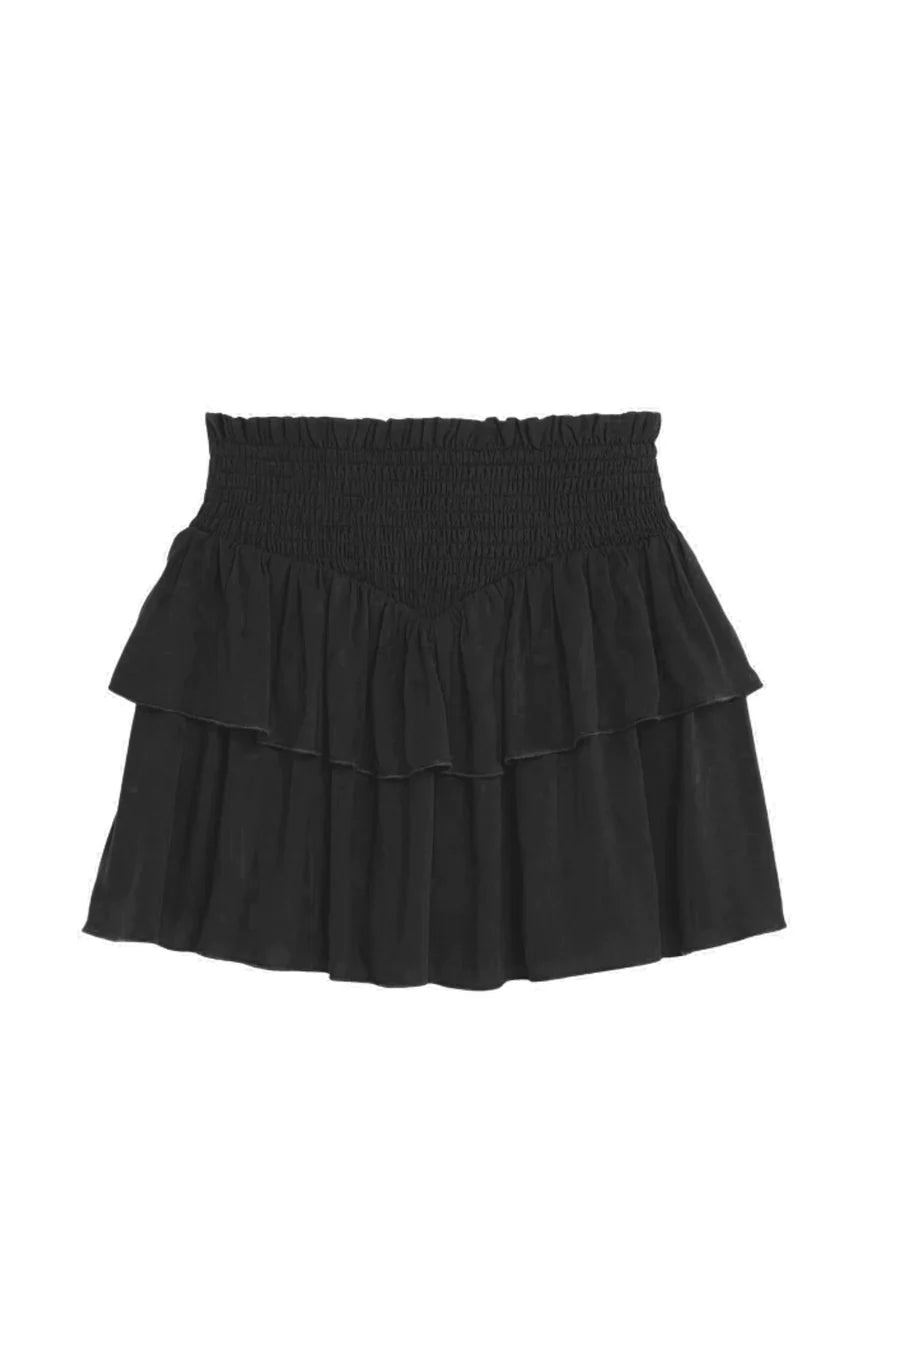 Brooke Black Smocked Skirt (Tweens) Katiej NYC